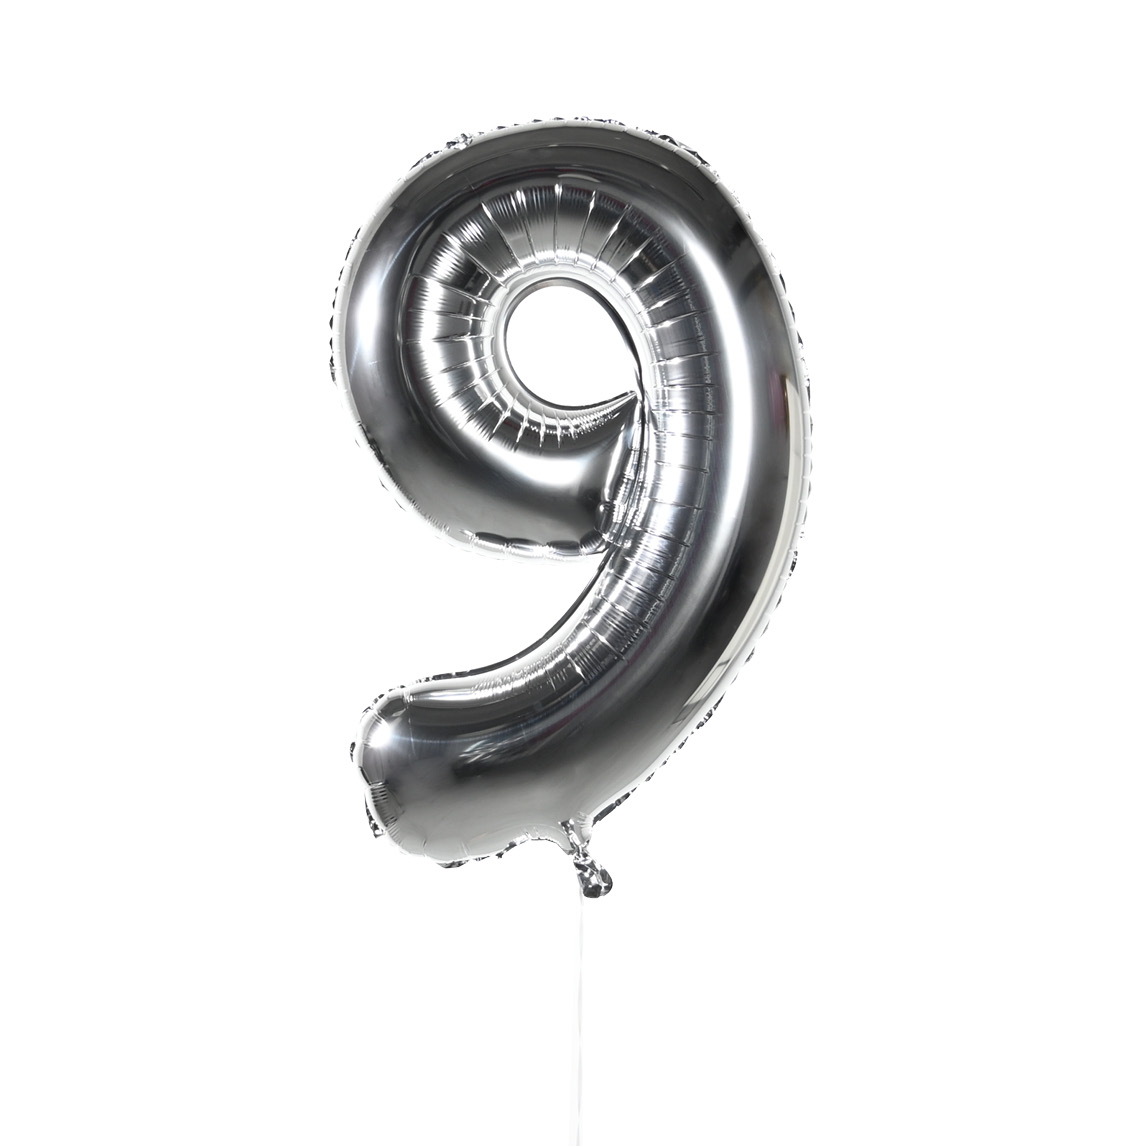 Воздушные шары Цифры (серебро) 9 воздушные шары из фольги 16 дюймов 32 дюйма 0 9 цифр 9 цветов шарики для день рождения